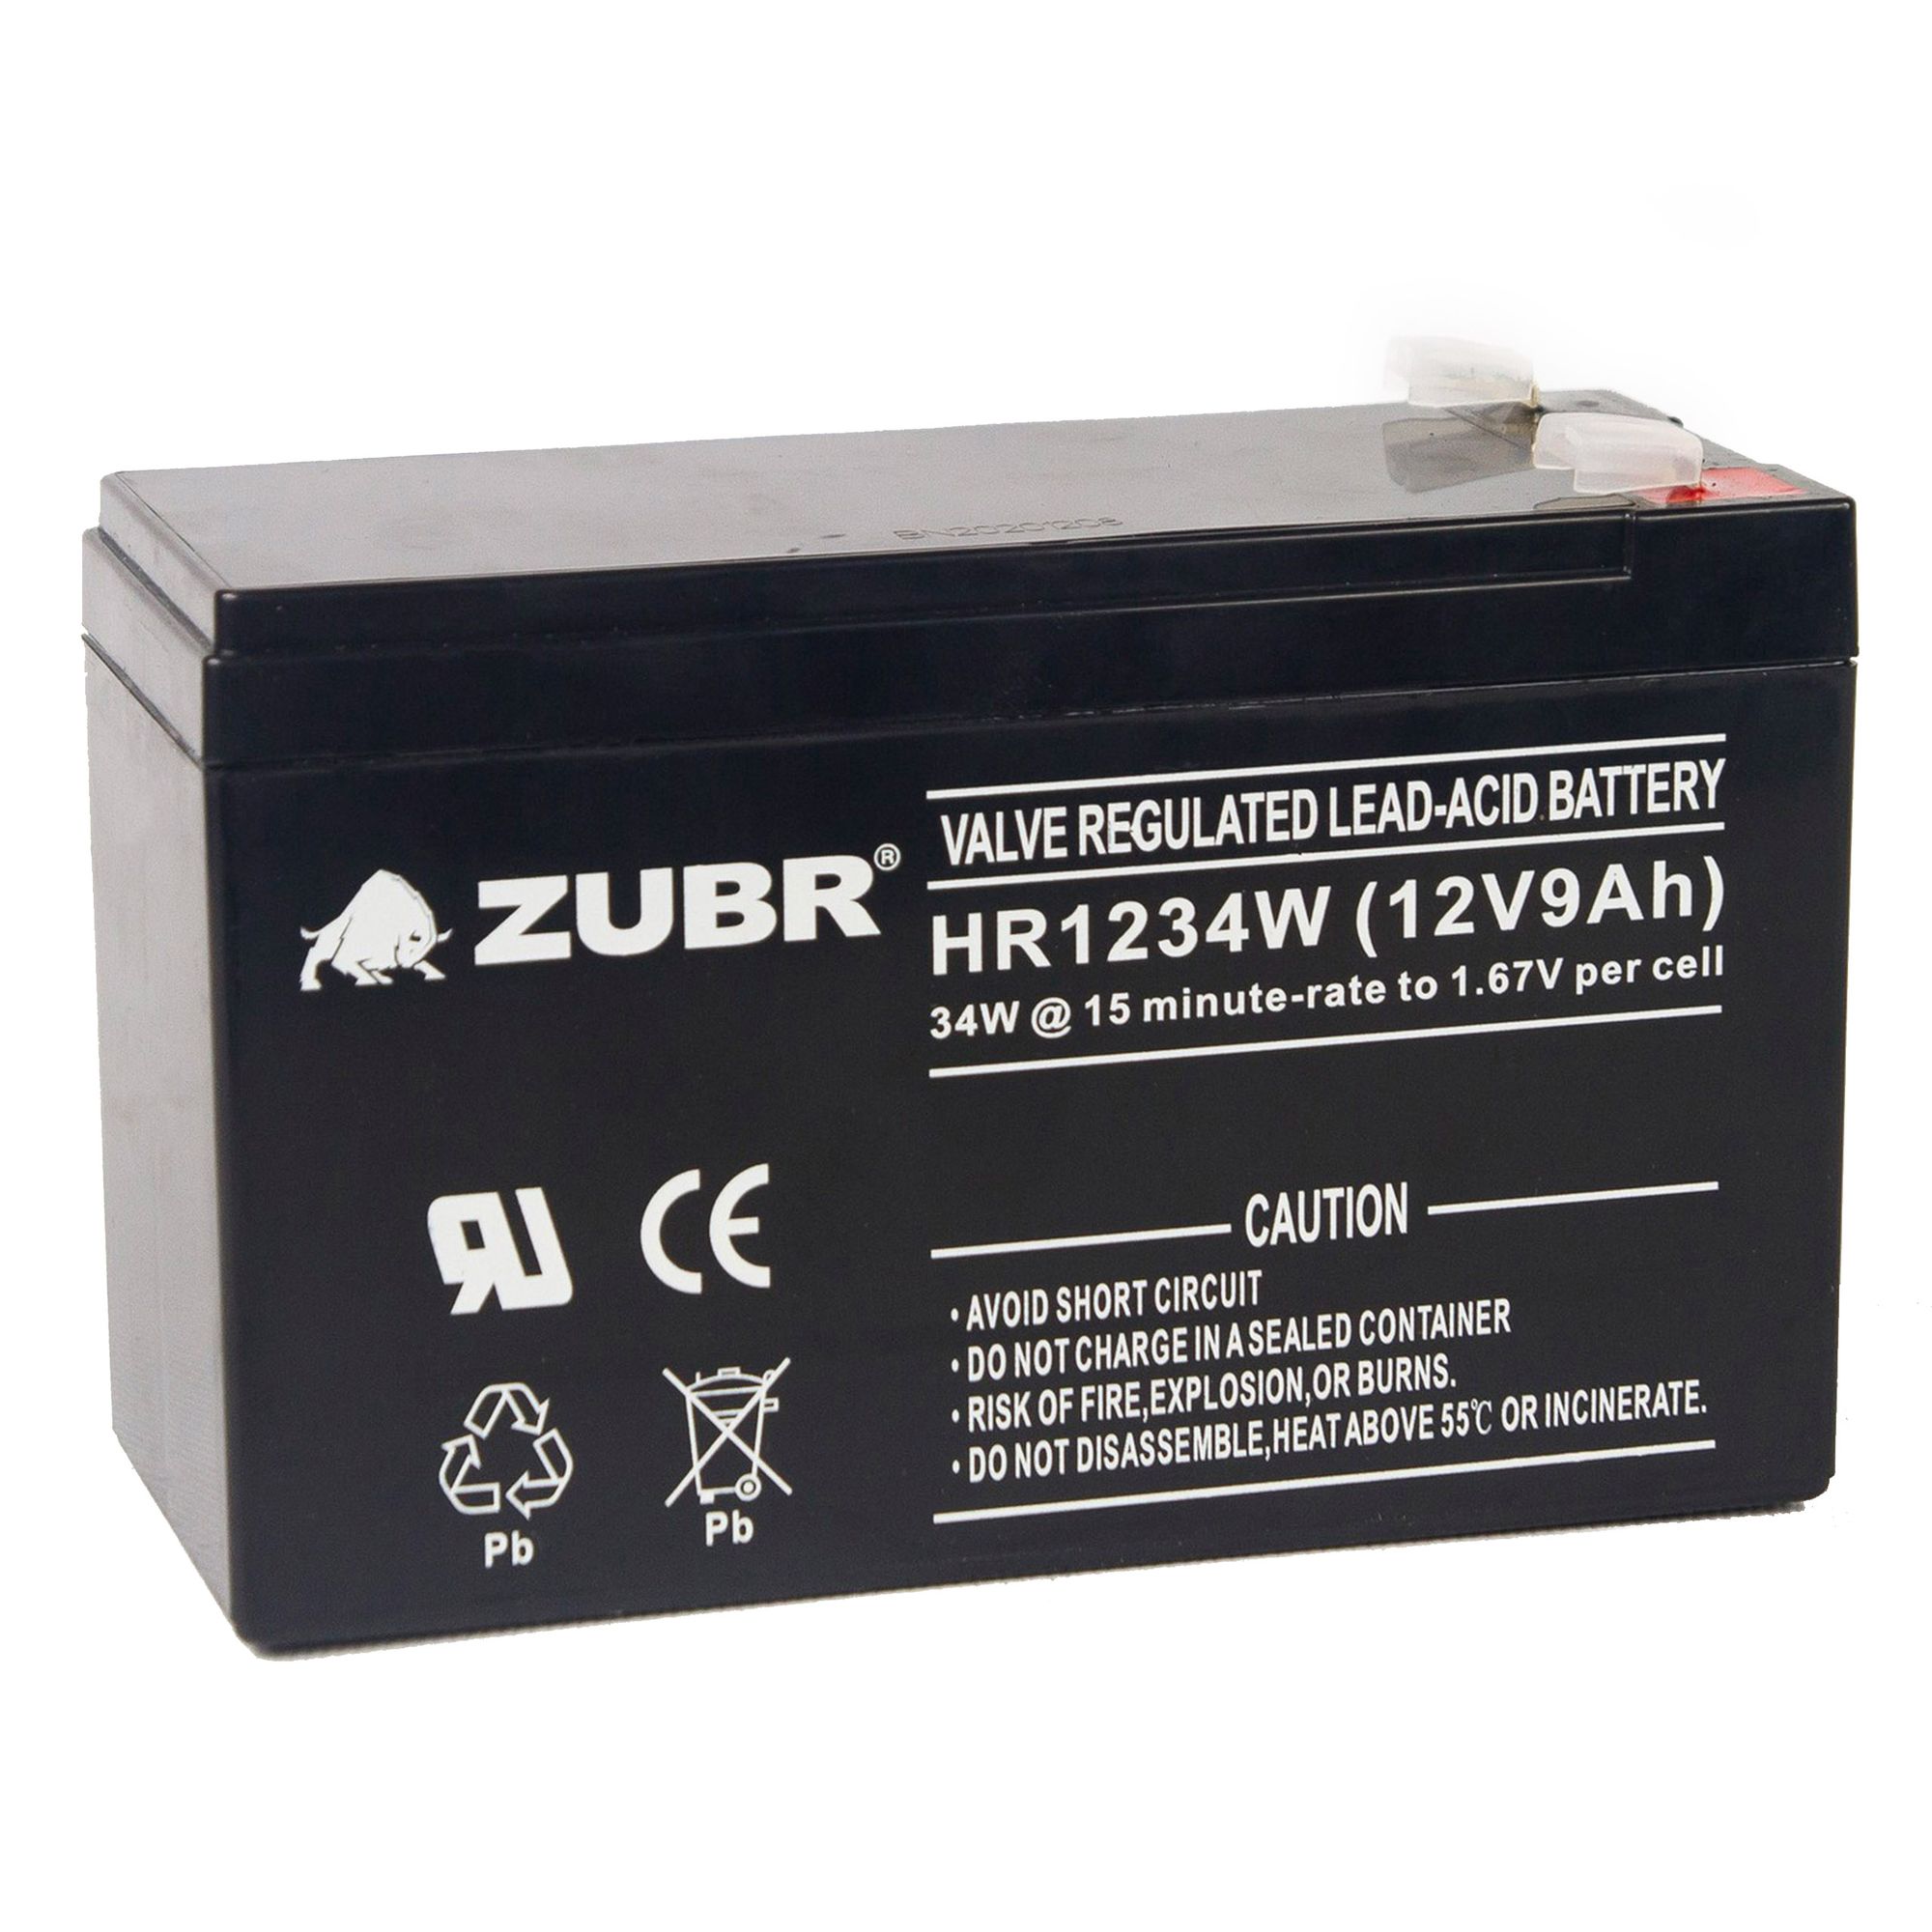 Батарея для ИБП ZUBR HR 1234 W (12V, 9Ah) (HR1234W) батарея csb hrl1234w 12v 9ah